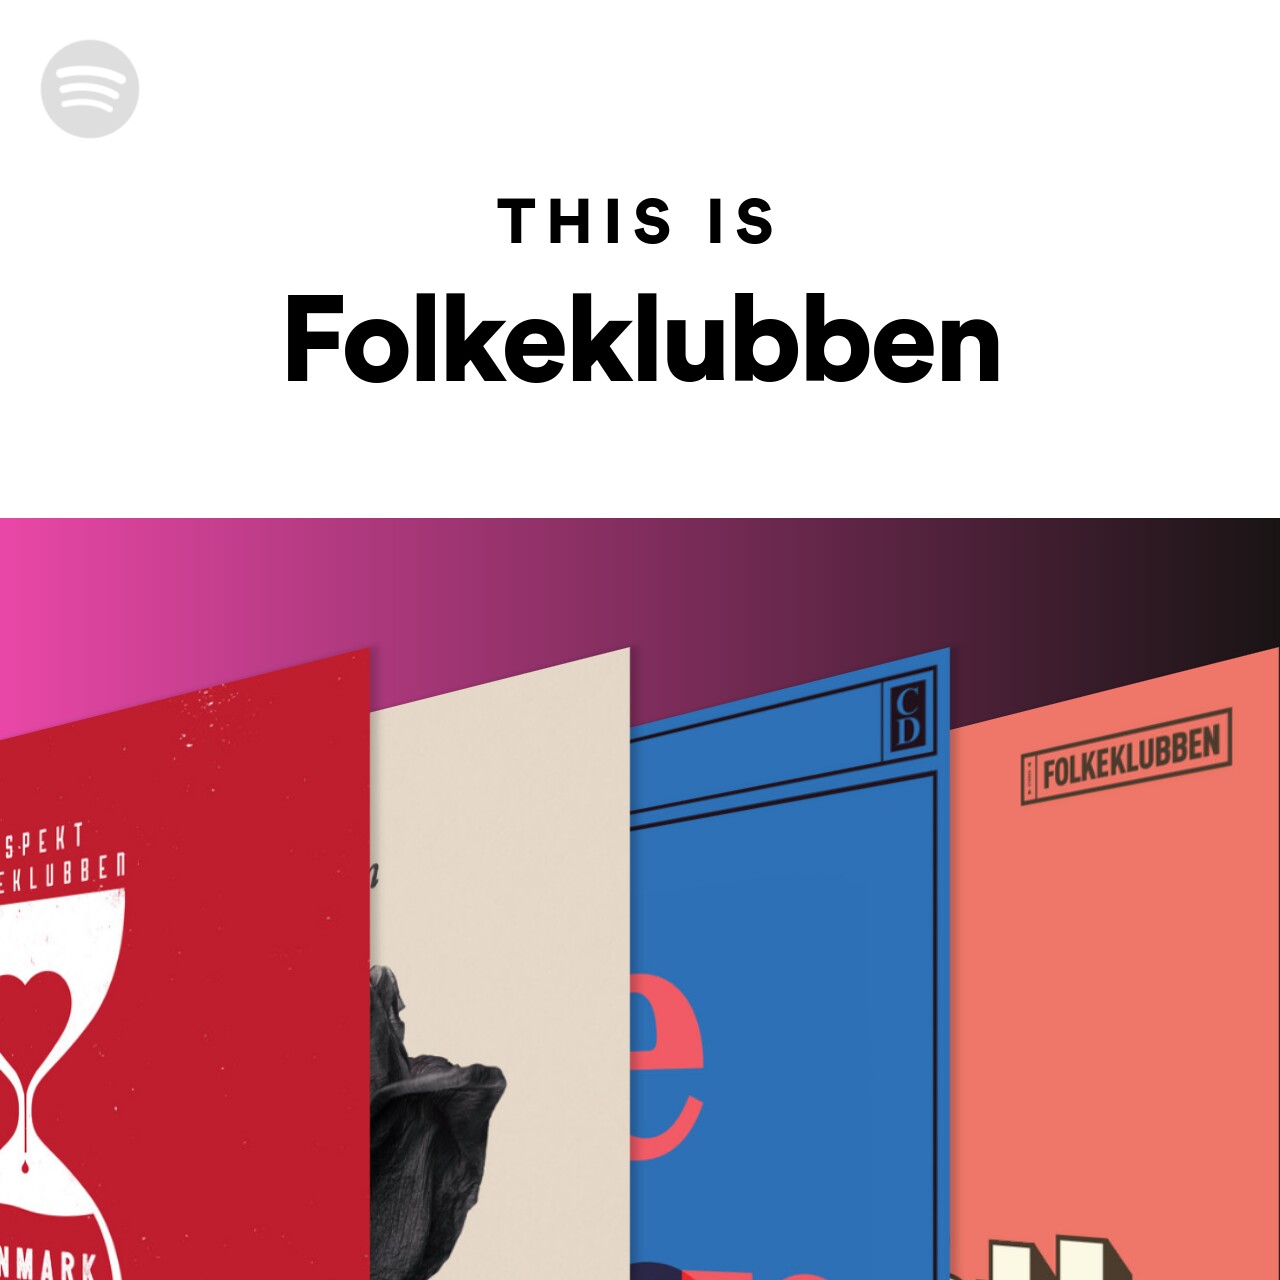 This Is Folkeklubben